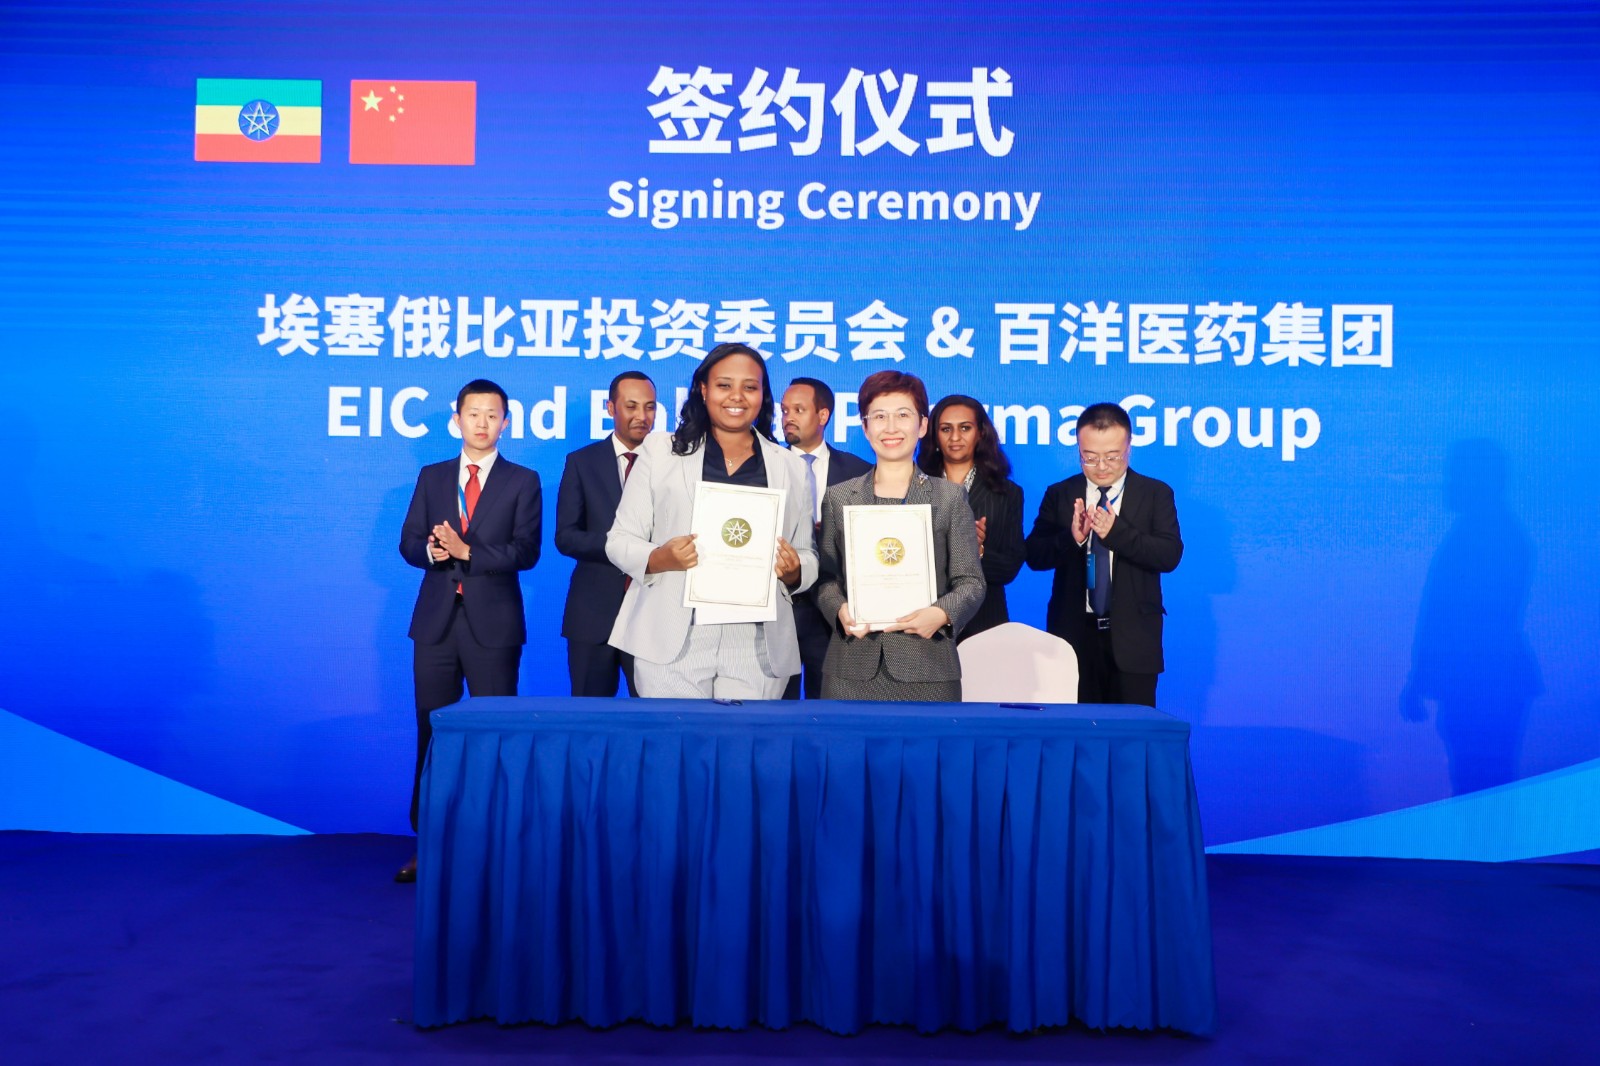 太阳成集团tyc7111cc与埃塞俄比亚投资委员会（EIC）签署谅解备忘录_副本.jpg